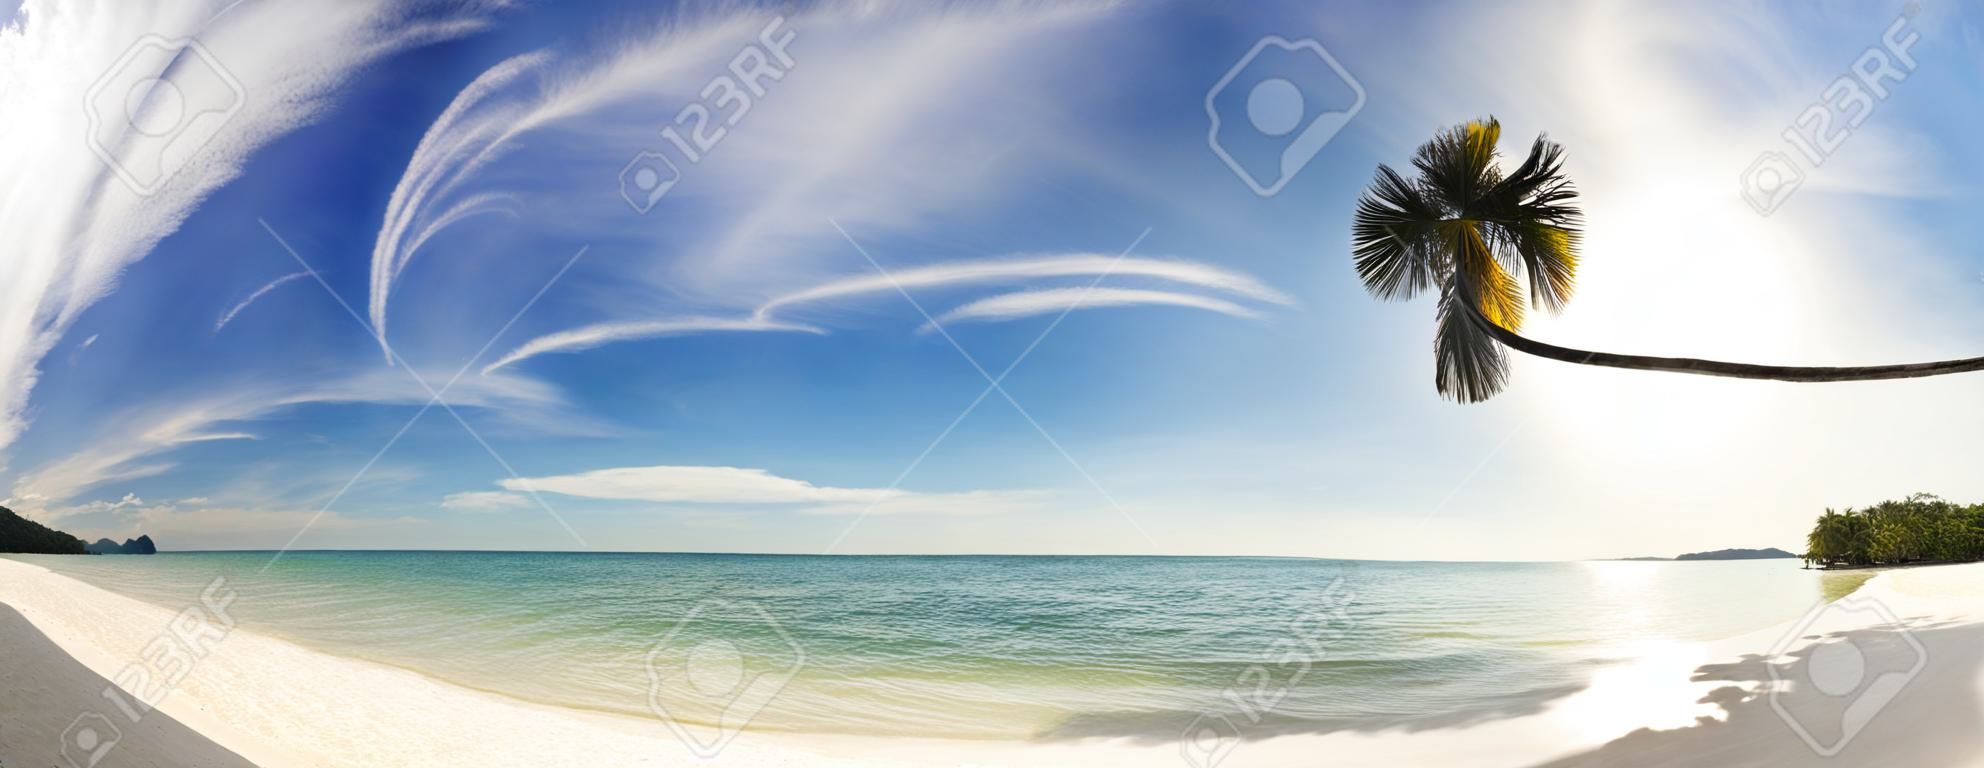 Panorama cosido de playa tropical exótica bajo el cielo azul. Tailandia